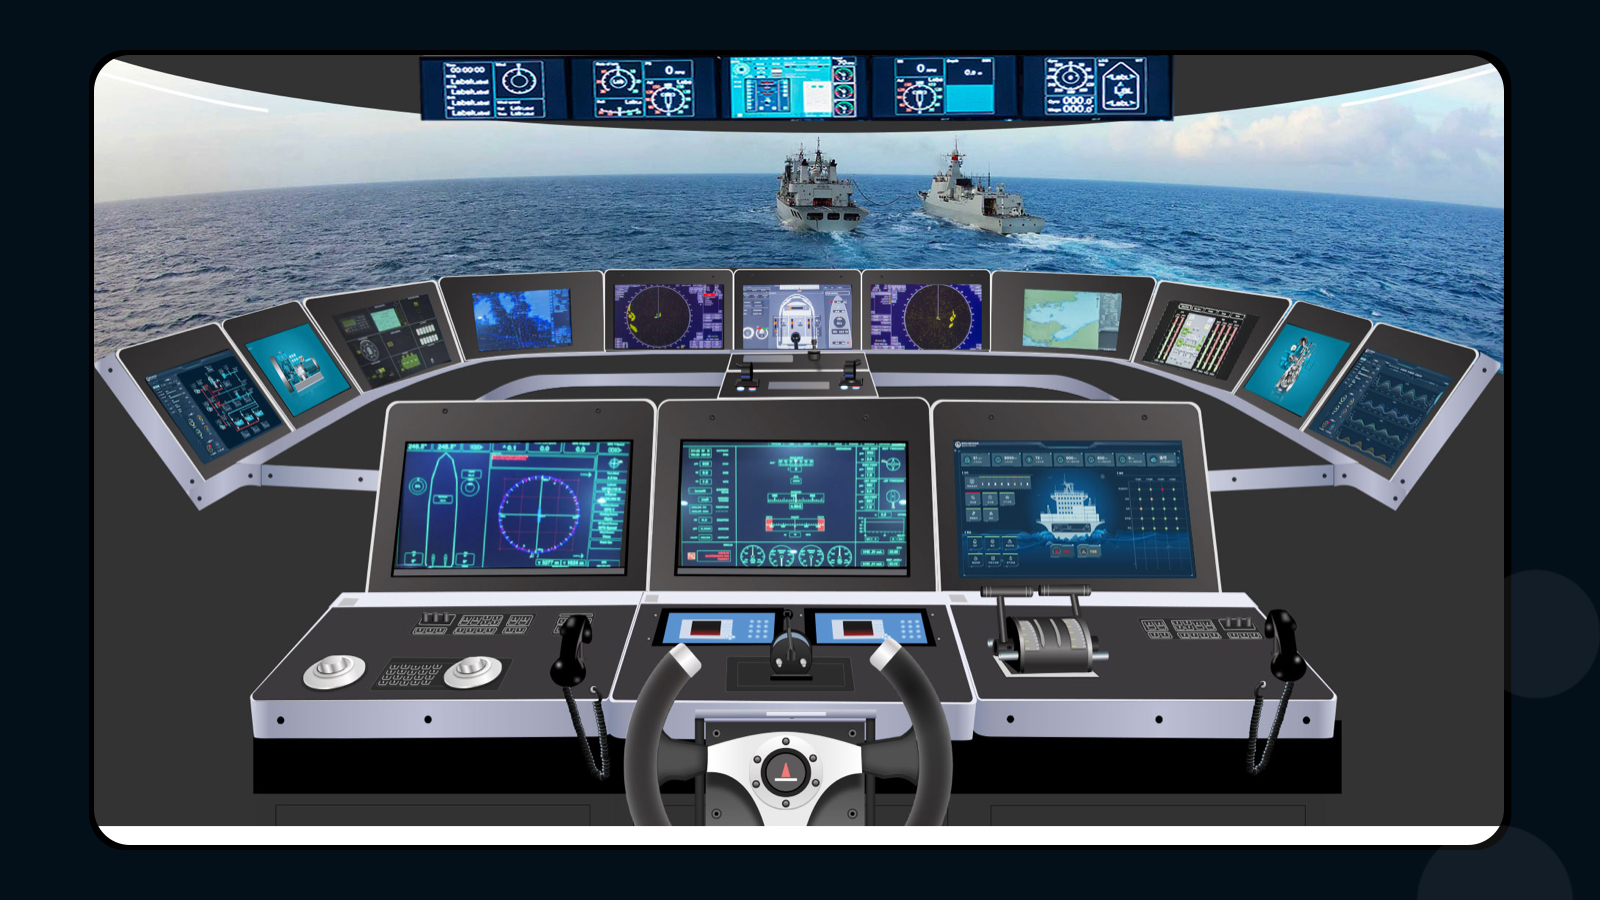 数字化驾驶仓设计,可视化驾驶仓设计,船舶系统设计,数字化大屏设计,监控大屏设计